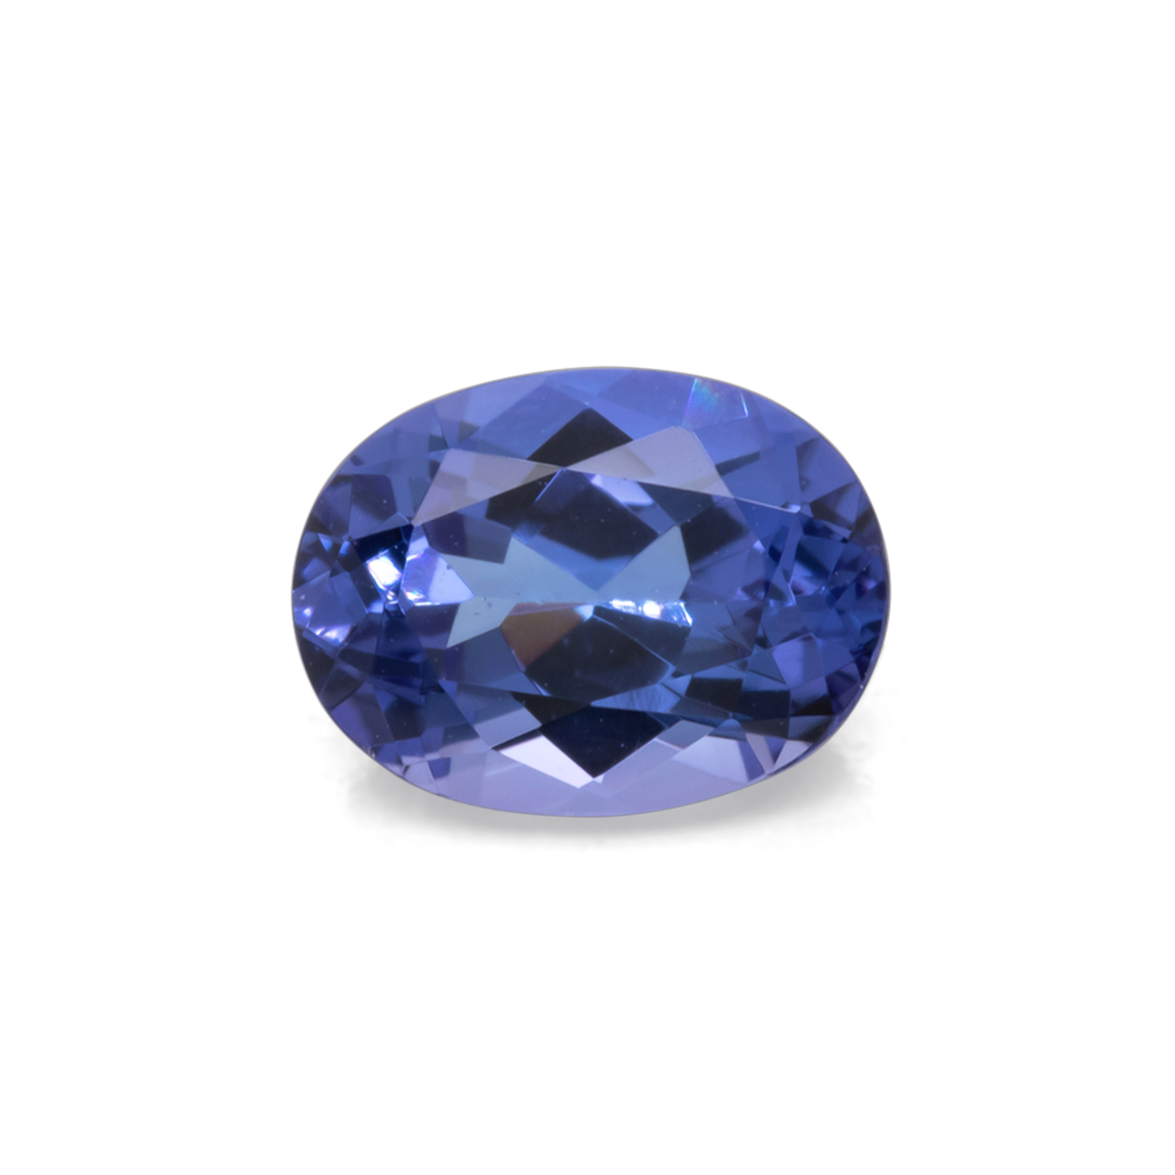 Tansanit - blau, oval, 8.1x6 mm, 1.46 cts, Nr. TZ99023